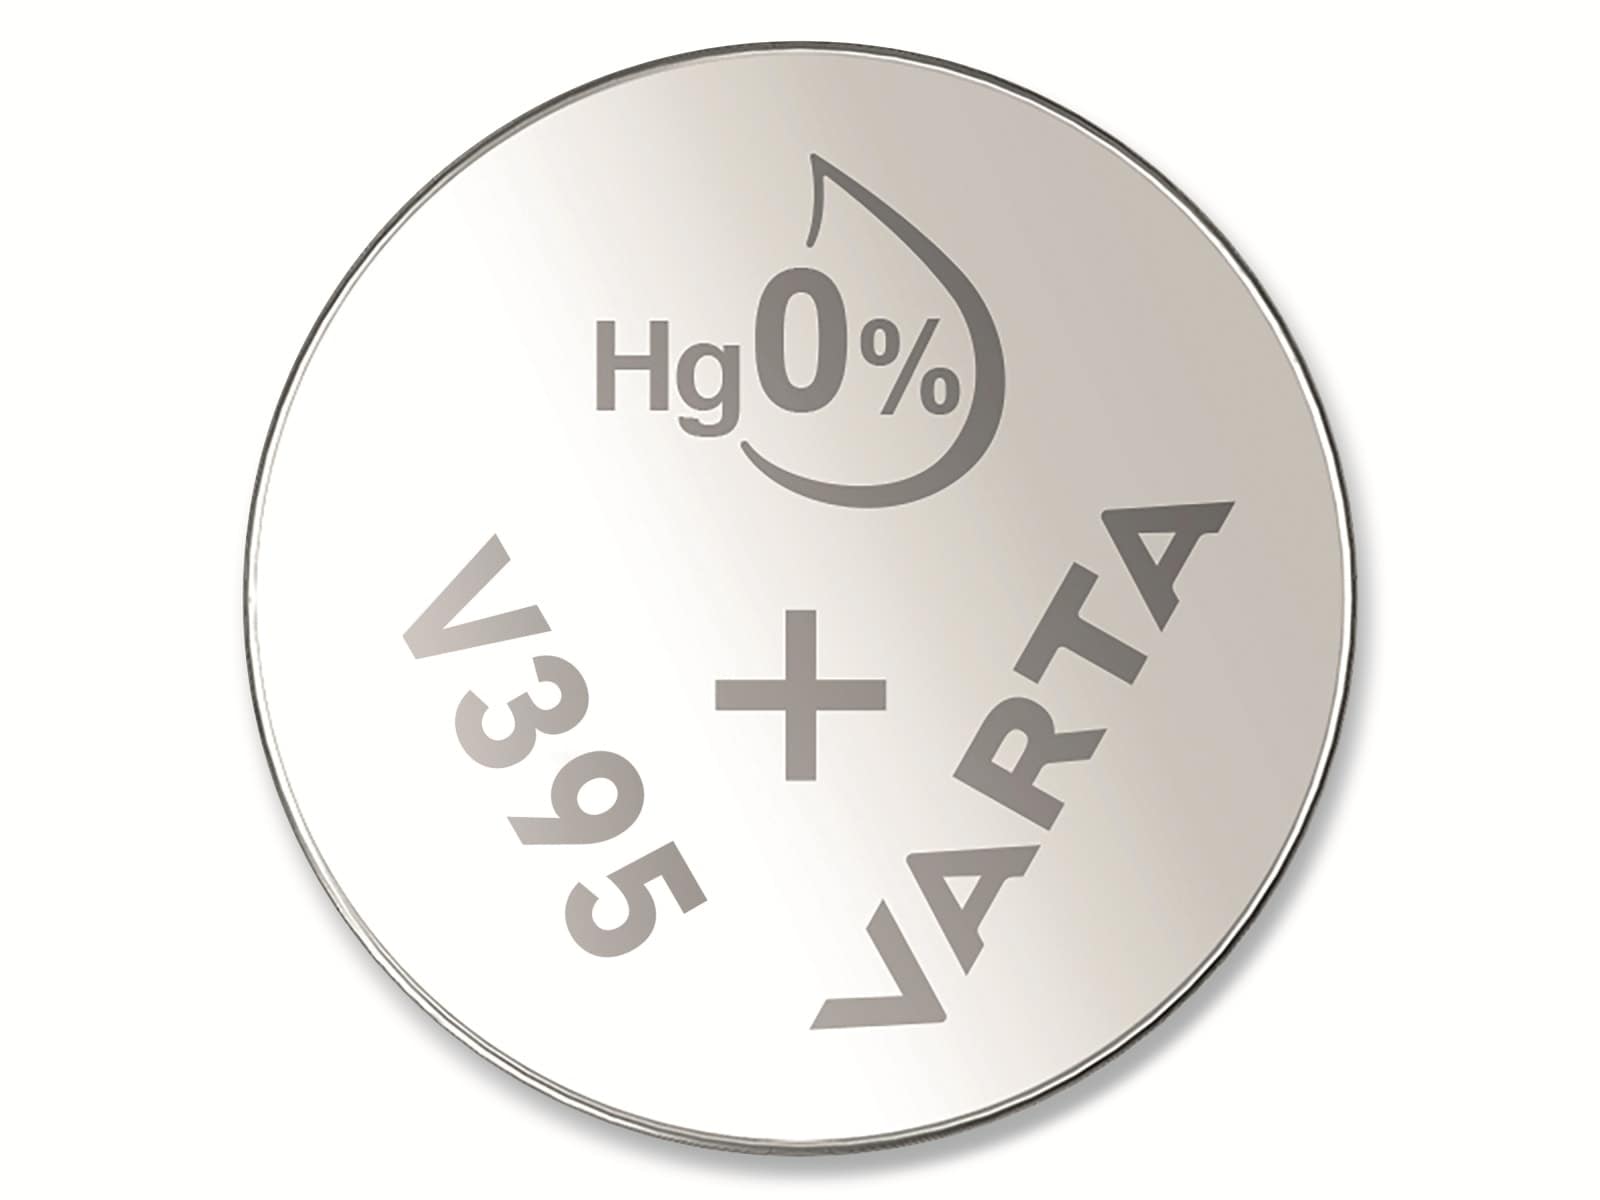 VARTA Knopfzelle Silver Oxide, 395 SR57,  1.55V, 10 Stück